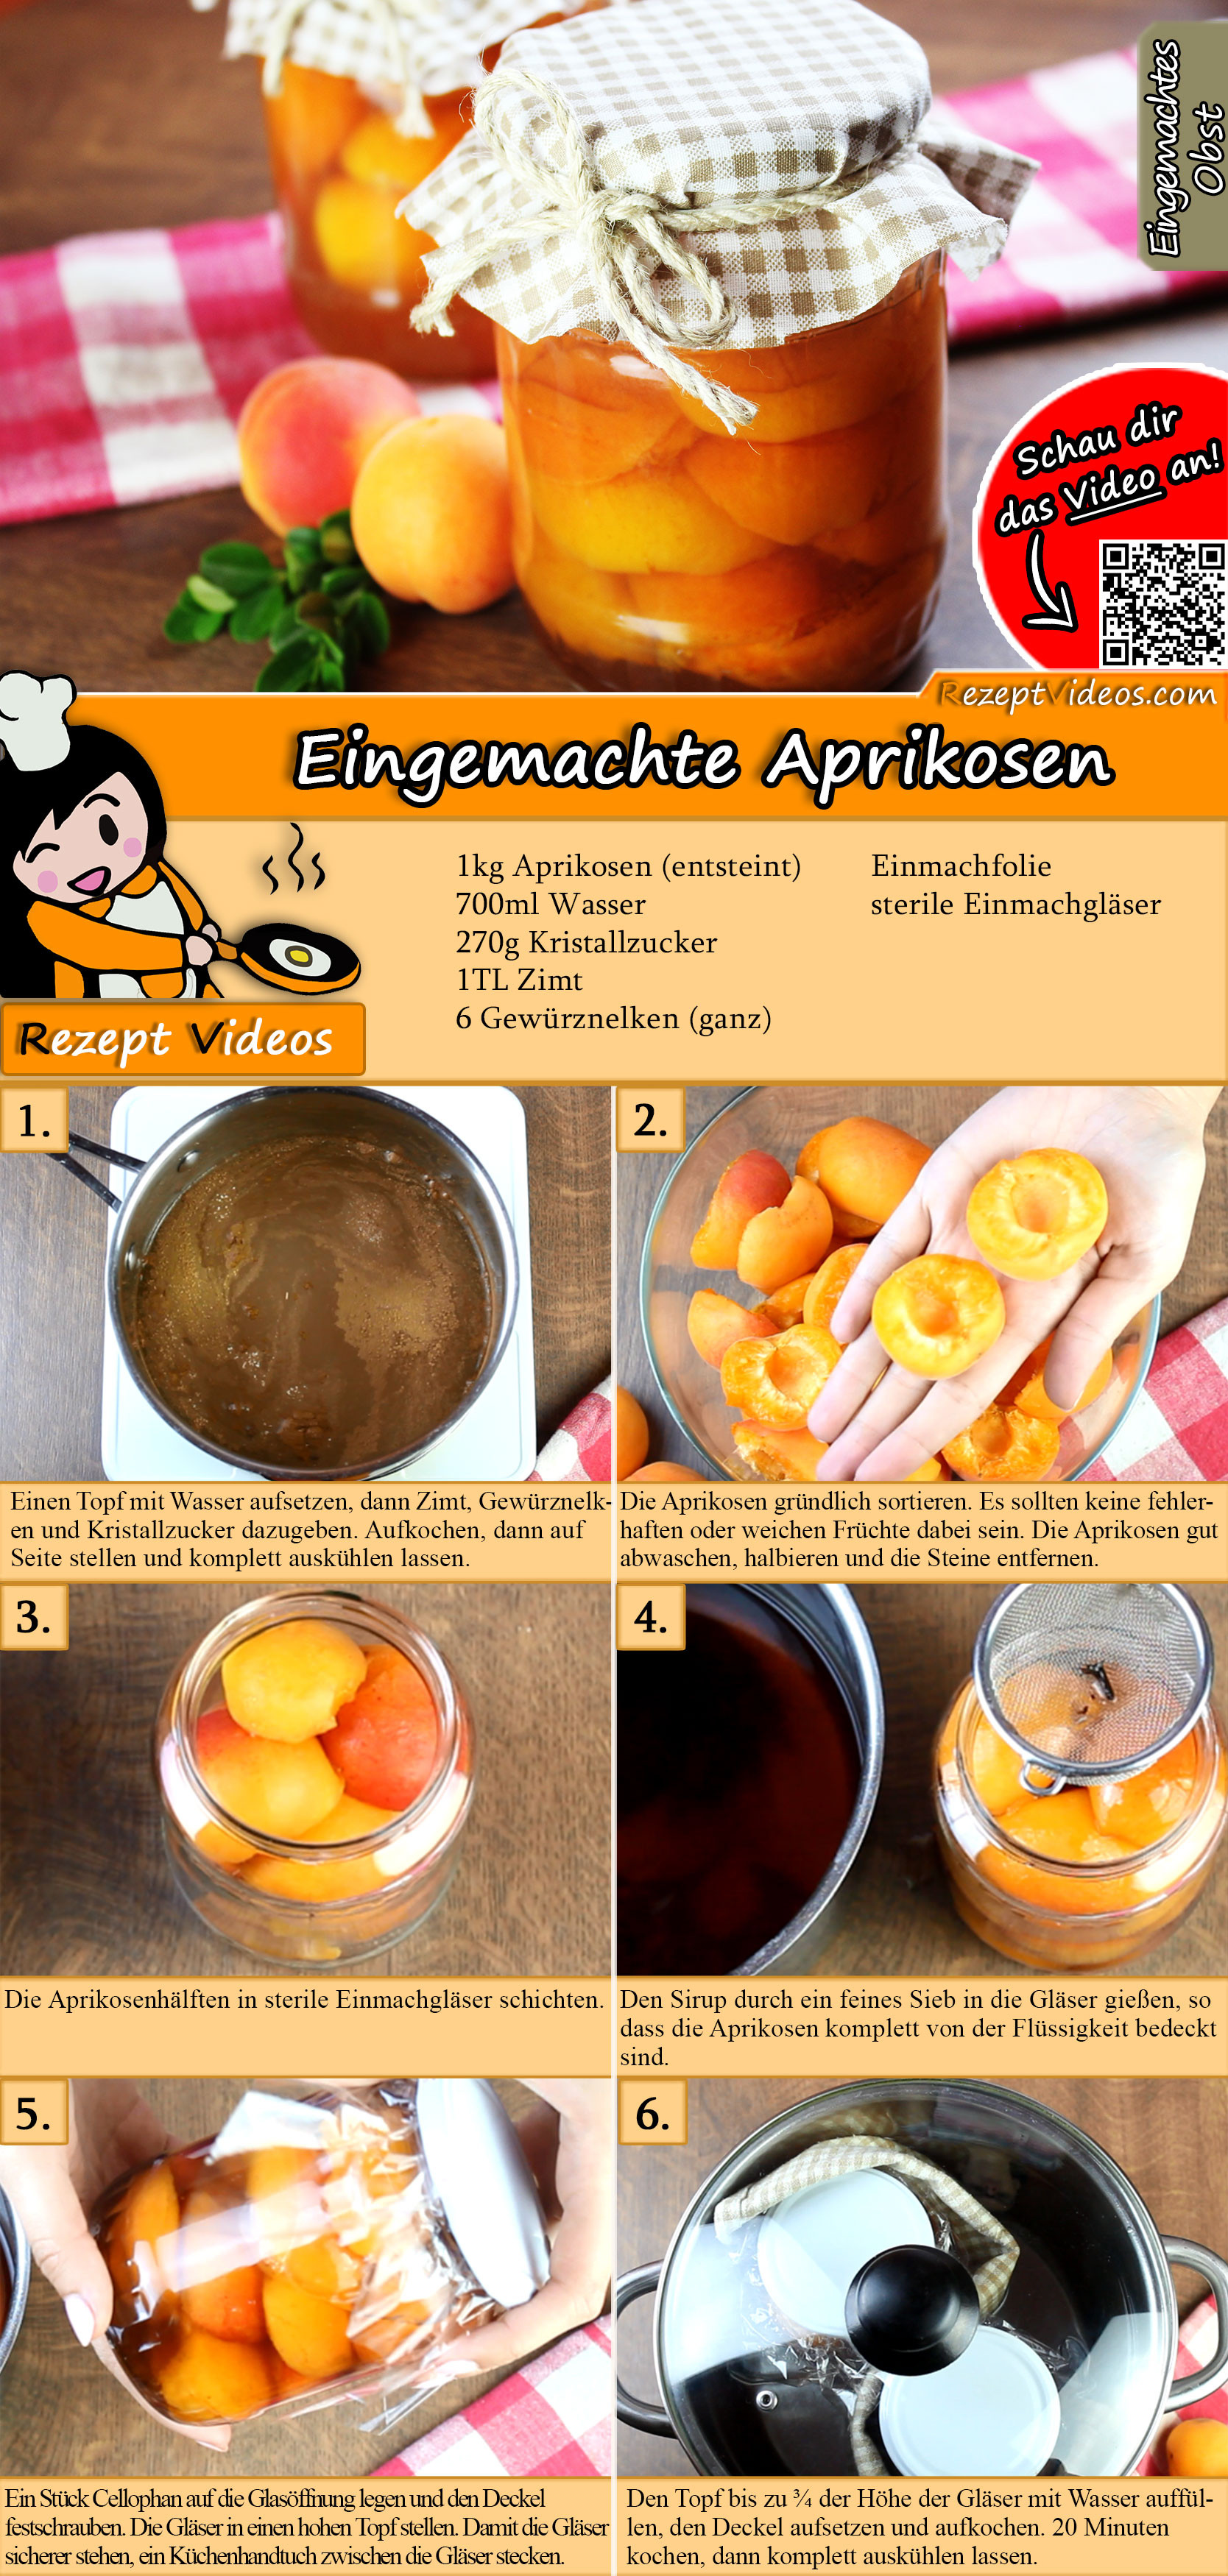 Eingemachte Aprikosen Rezept mit Video